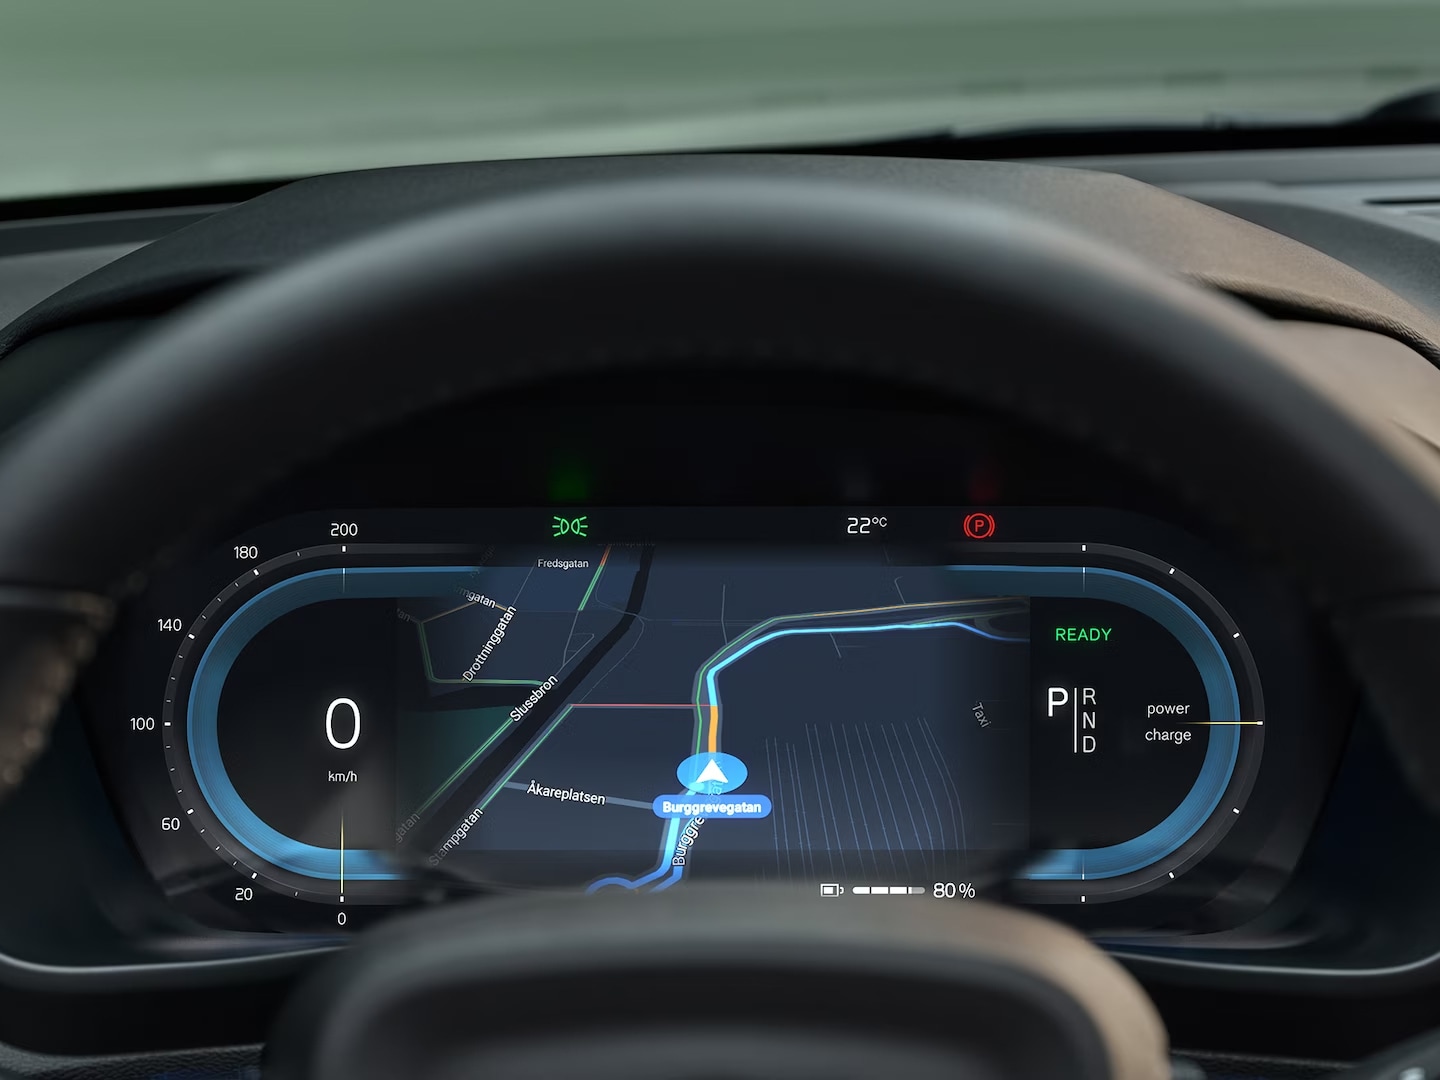 Wyświetlacz kierowcy Volvo EX40 pokazujący wskazówki nawigacji w czasie rzeczywistym